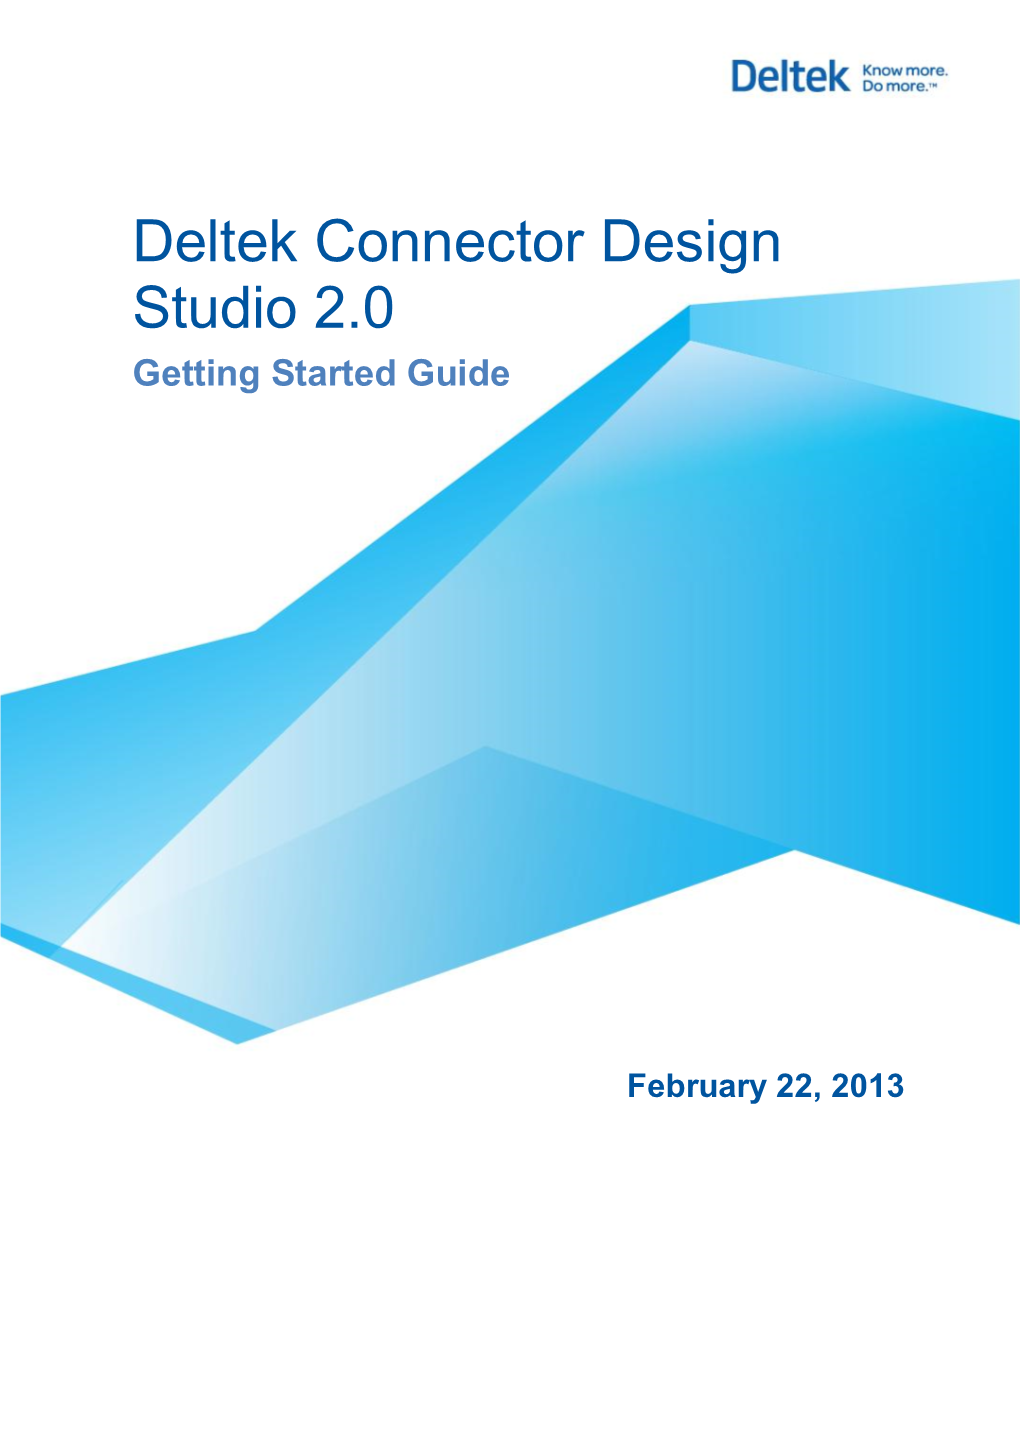 Deltek Connector Design Studio 2.0 Getting Started Guide